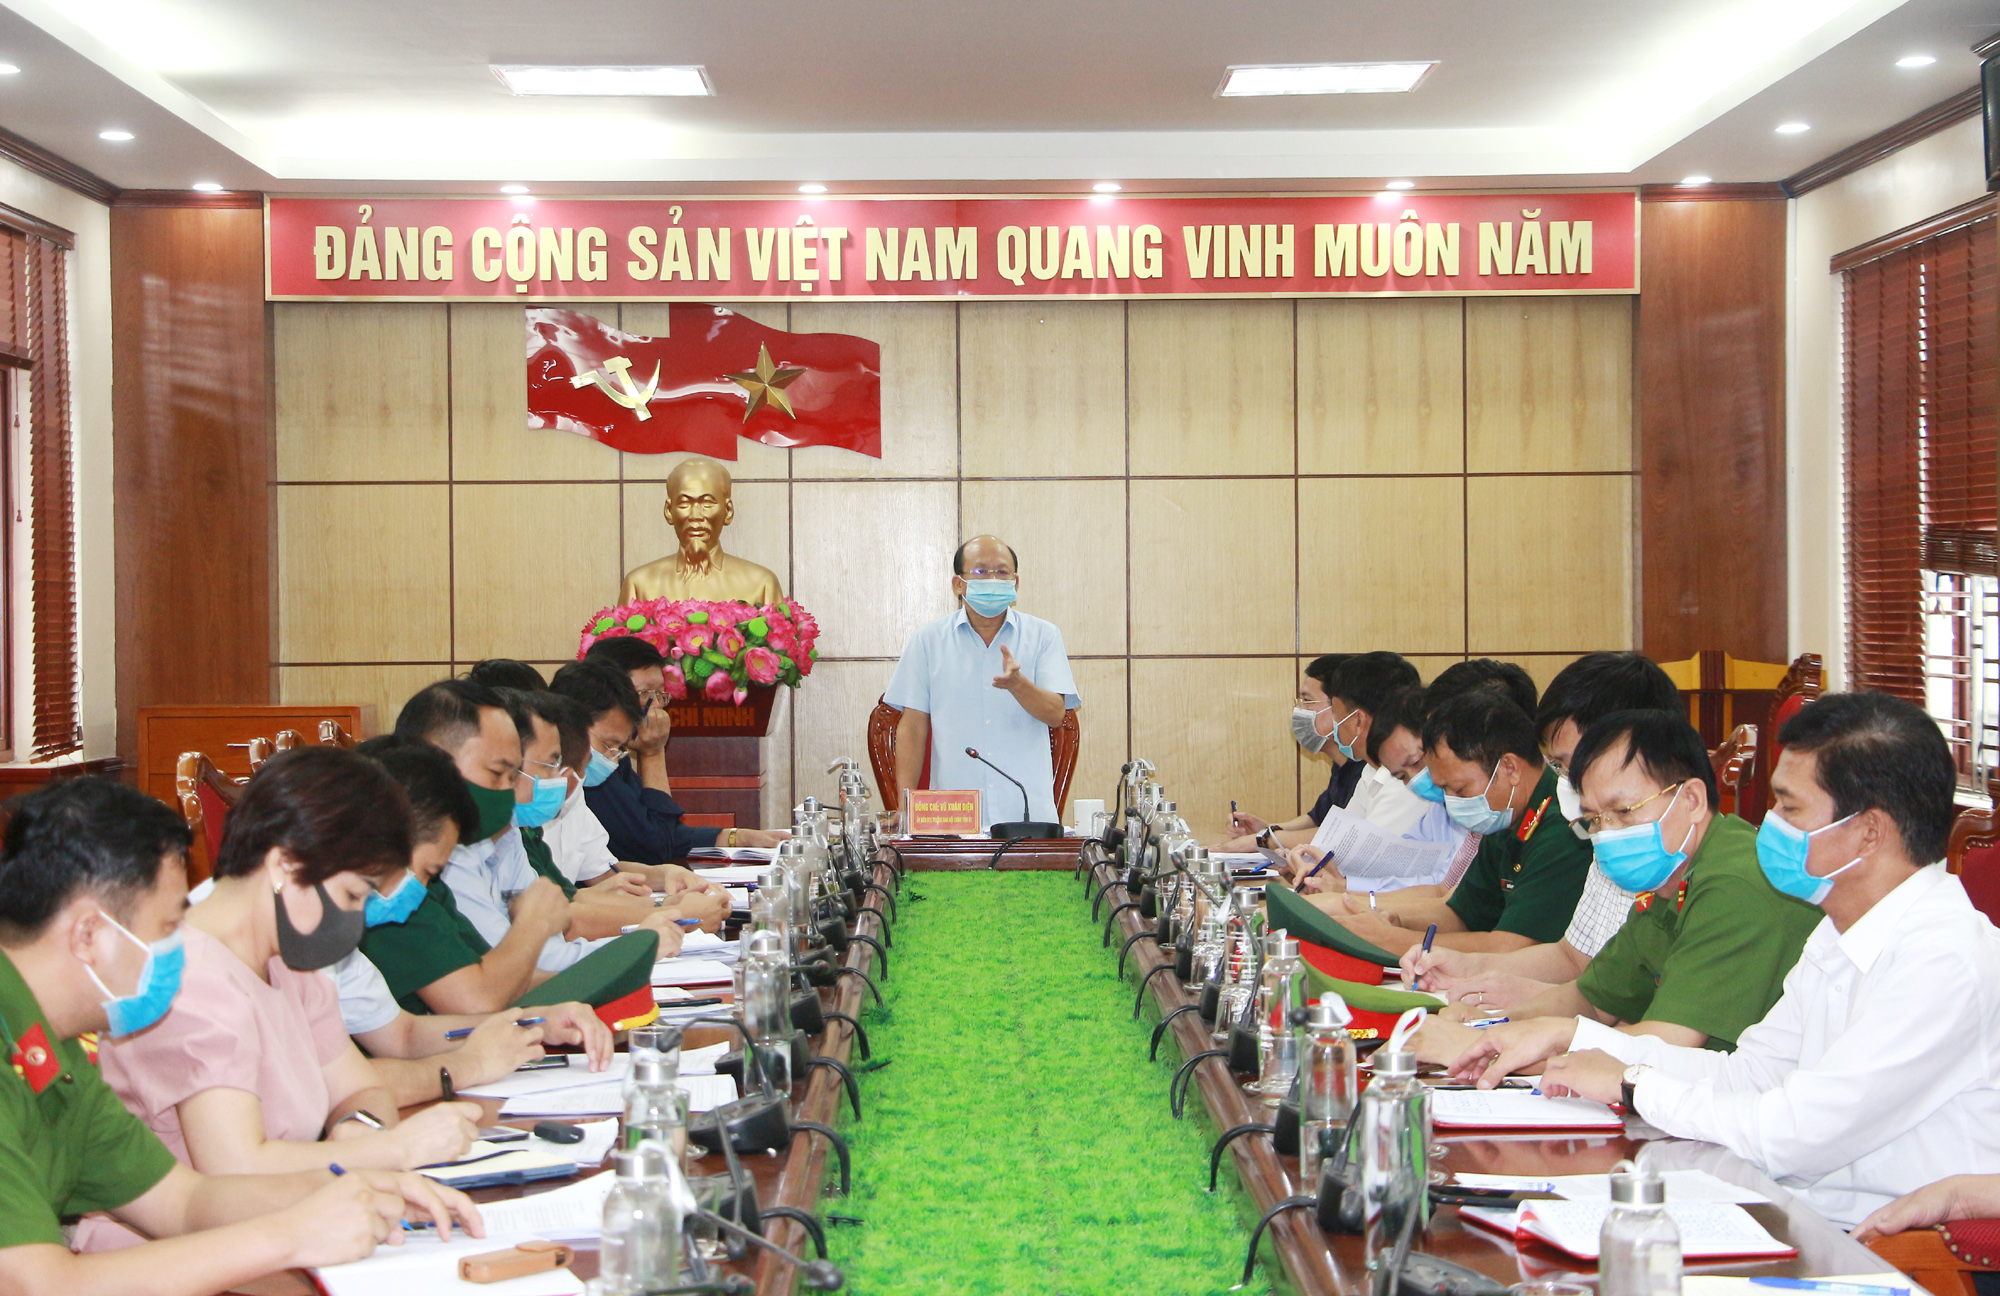 Đồng chí Vũ Xuân Diện, Trưởng Ban Nội chính Tỉnh ủy, phát biểu tại buổi làm việc.